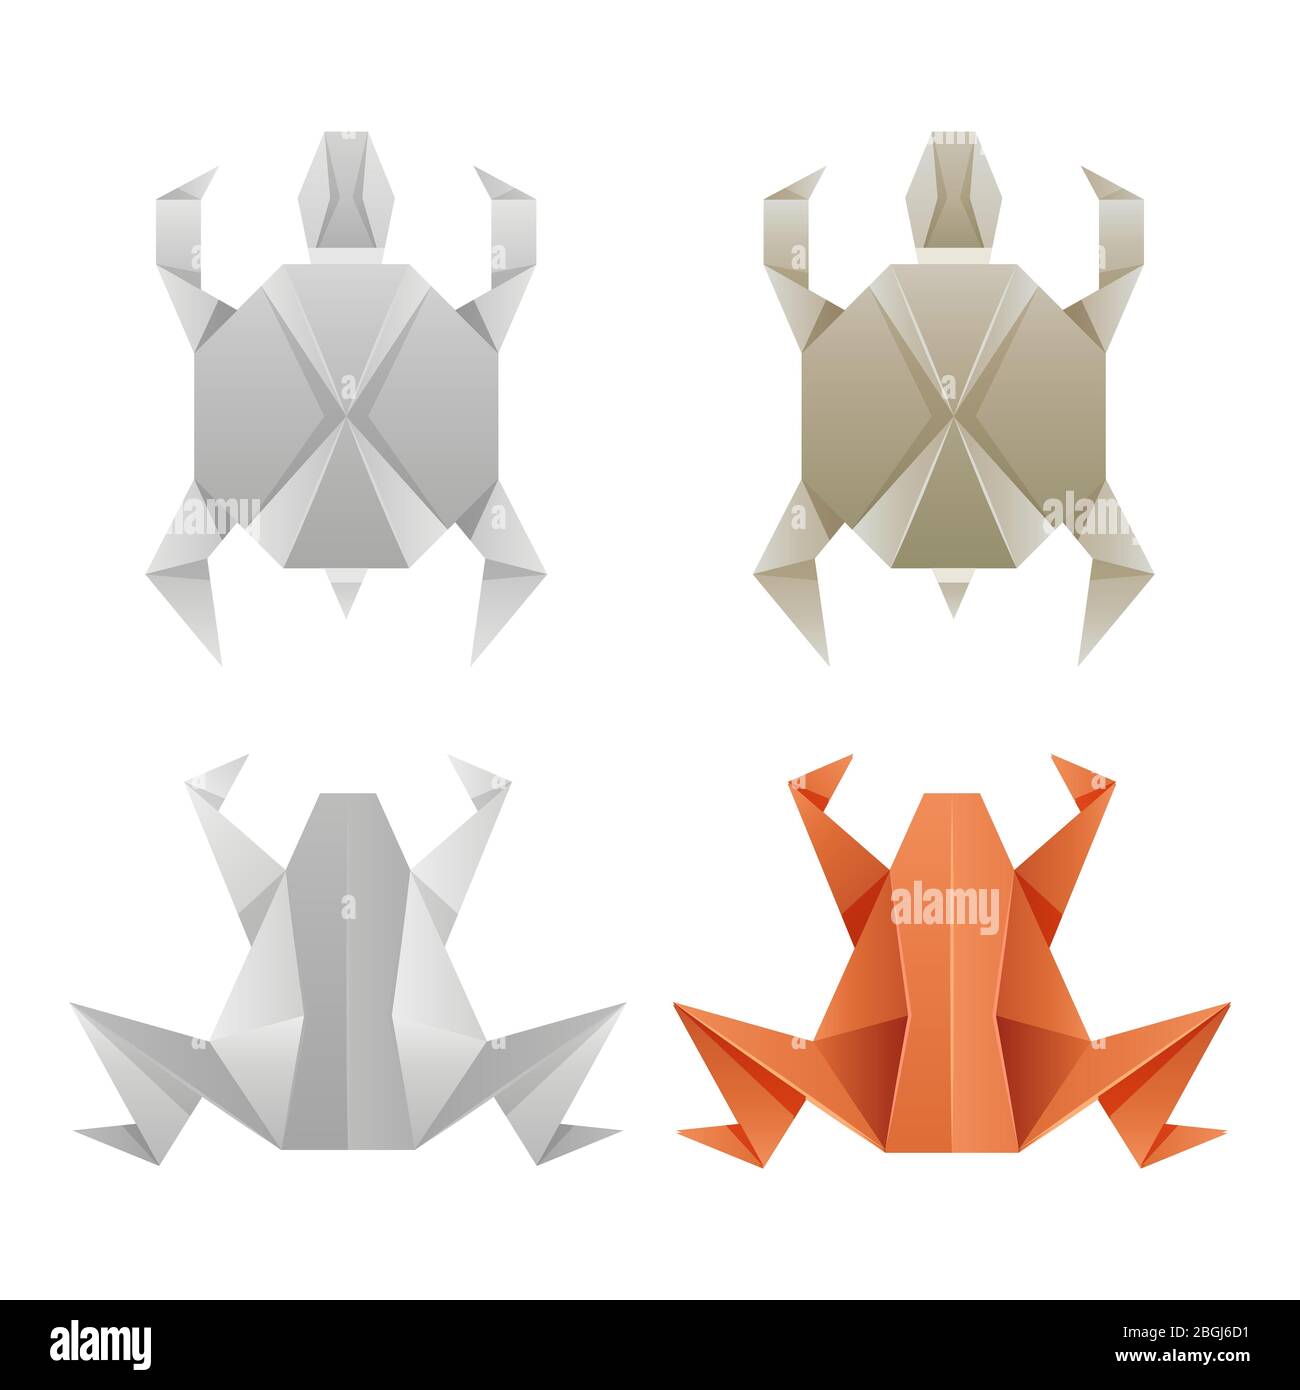 Japanische Origami-Papier Frösche und Schildkröten isoliert auf weißem Hintergrund. Vektorgrafik Stock Vektor